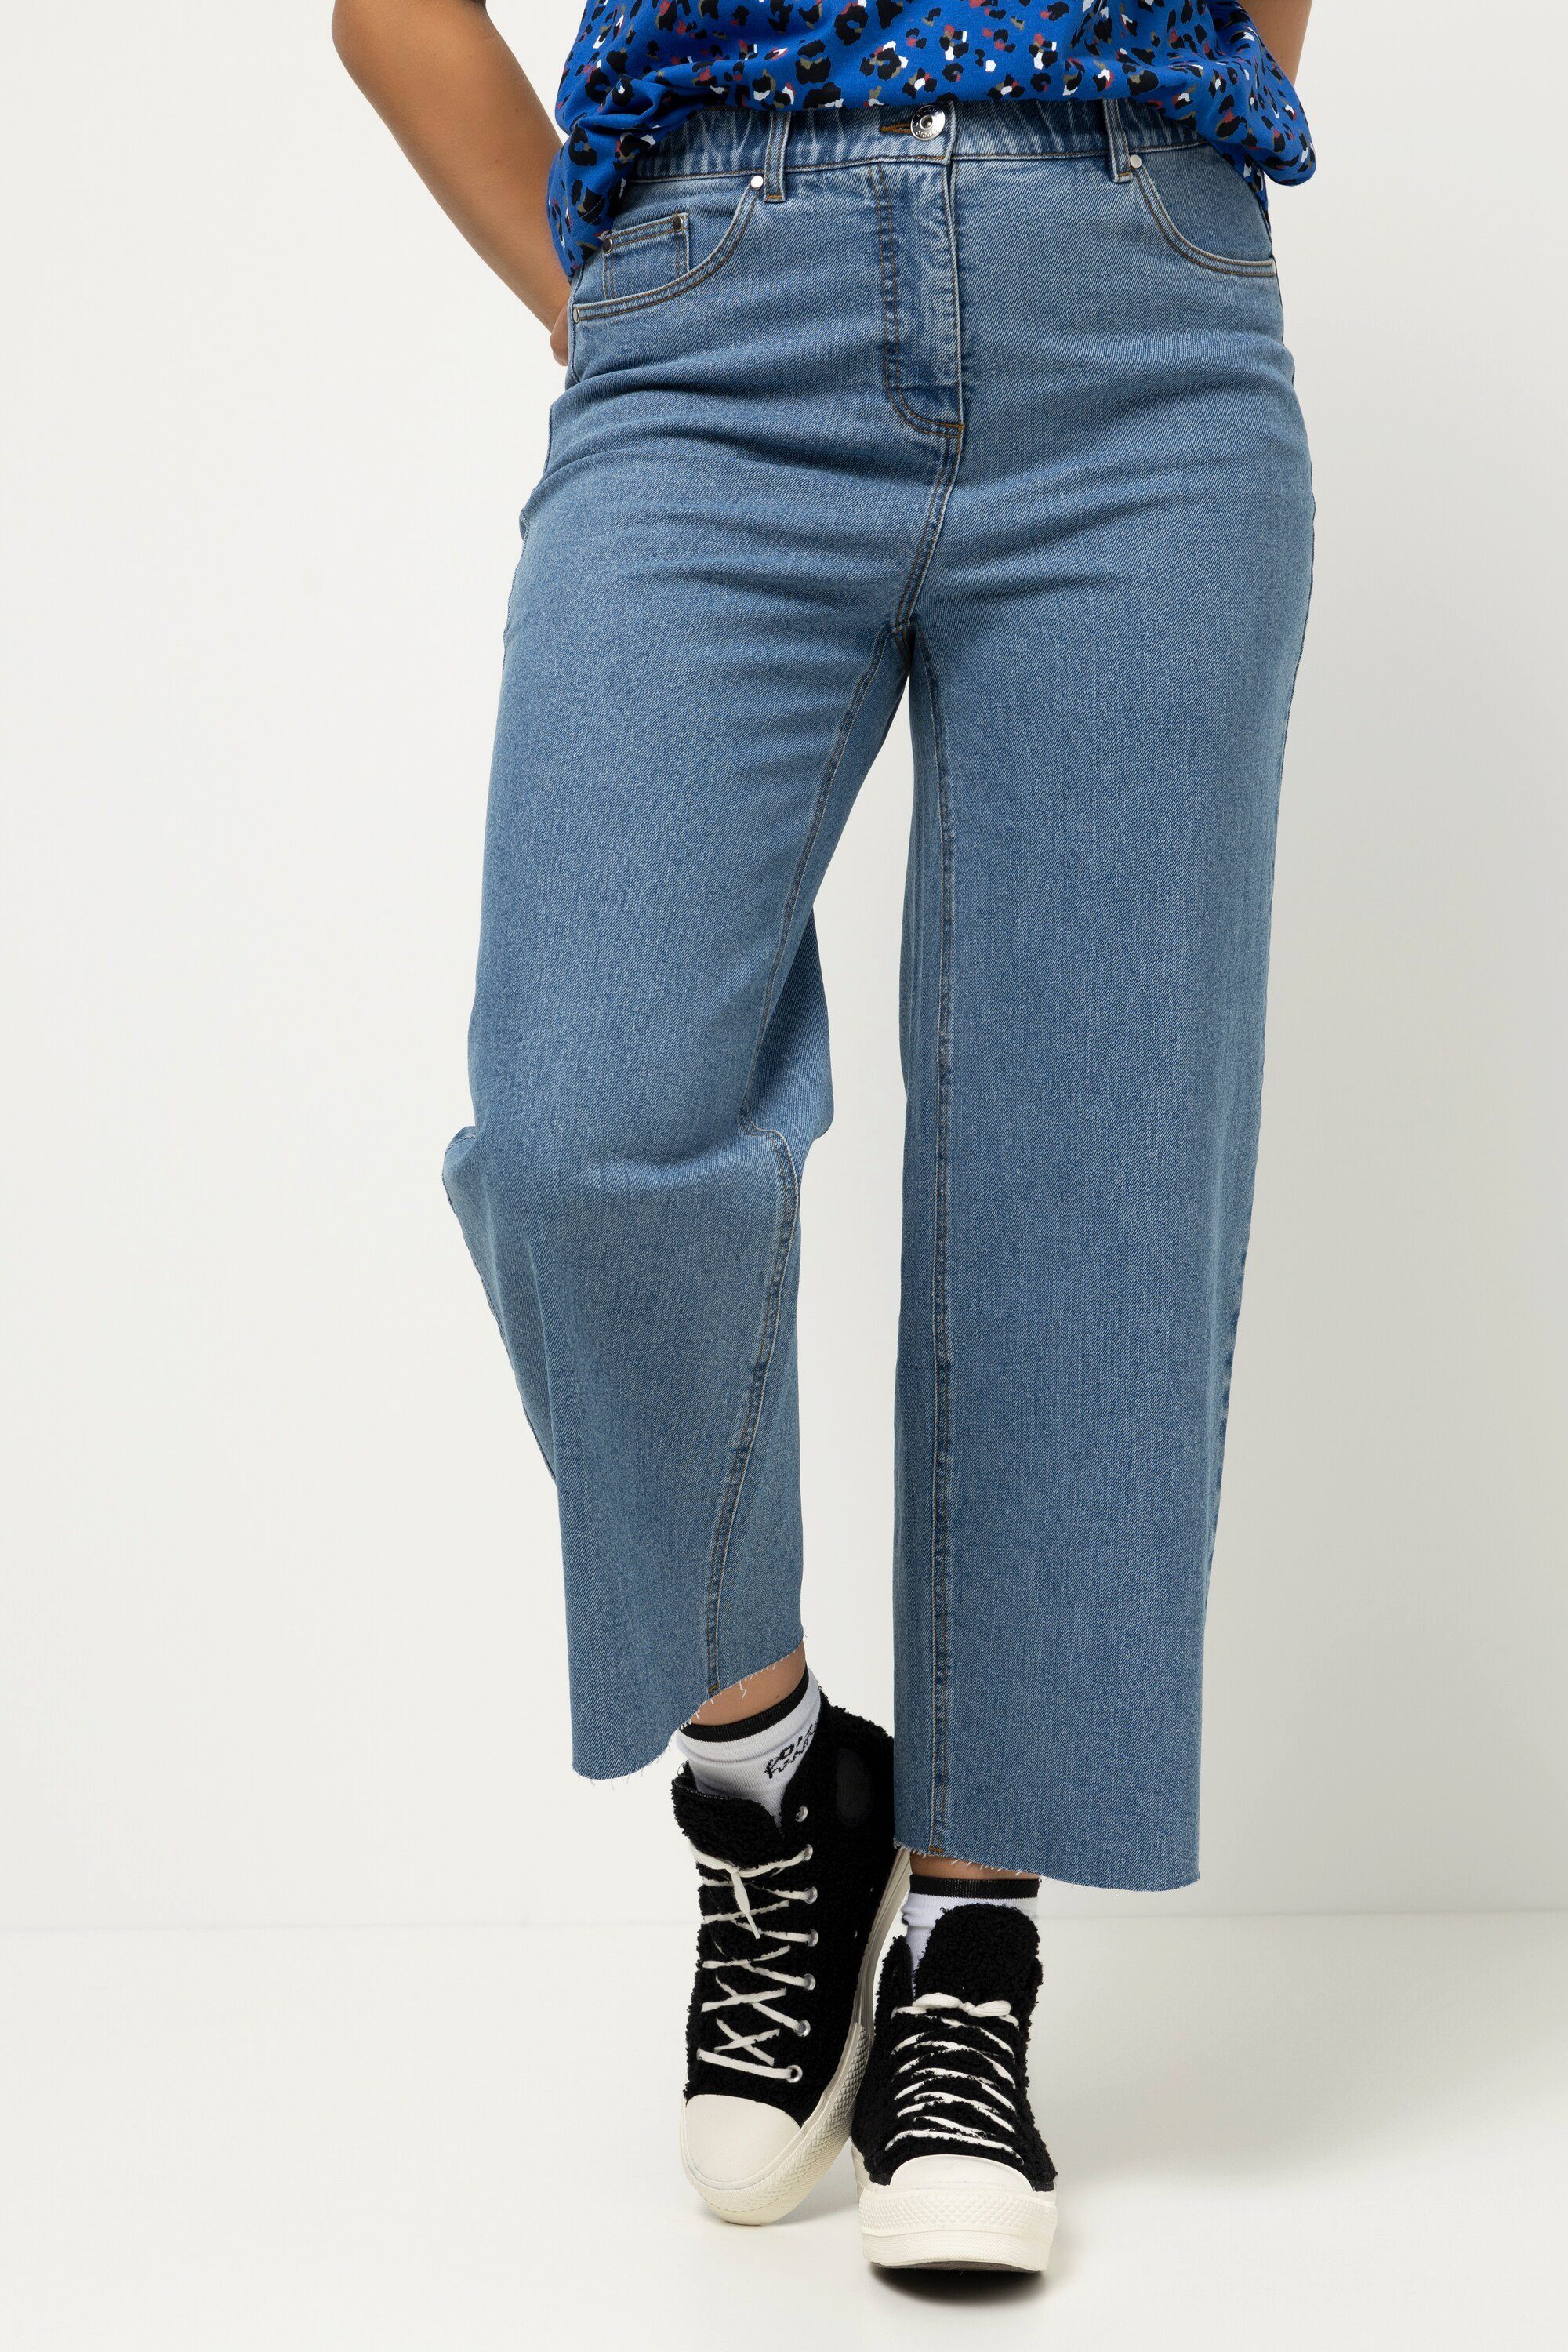 Studio Untold Regular-fit-Jeans Jeans High Waist weites Bein 5-Pocket  cutted Saum